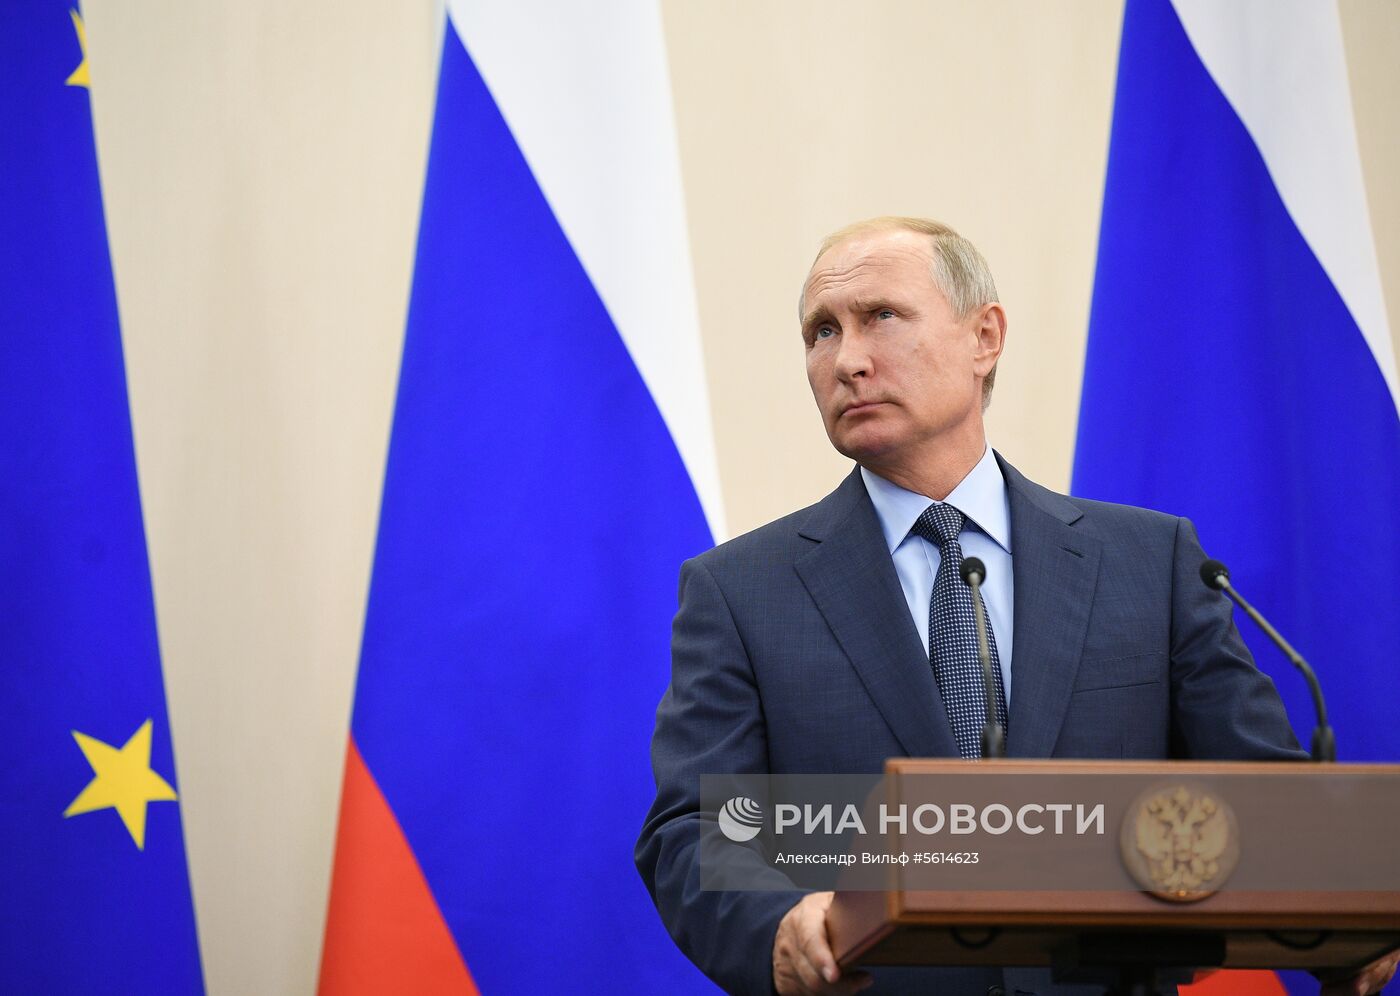 Встреча президента РФ В. Путина с президентом Финляндии С. Ниинистё